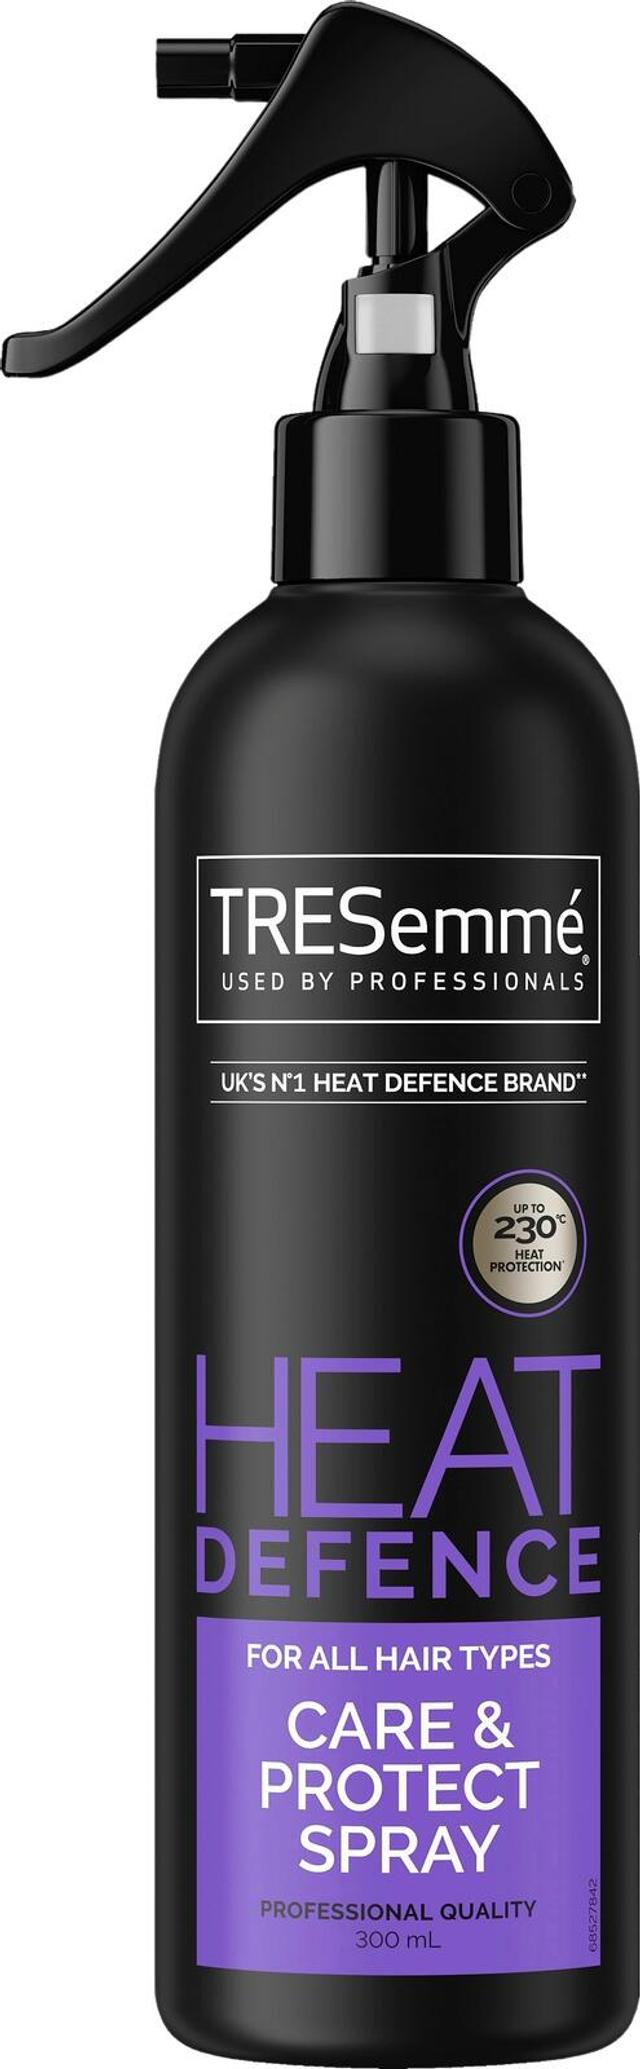 TRESemmé Heat Defence Lämpösuojasuihke 230°C asti Kaikille hiustyypeille 300 ml